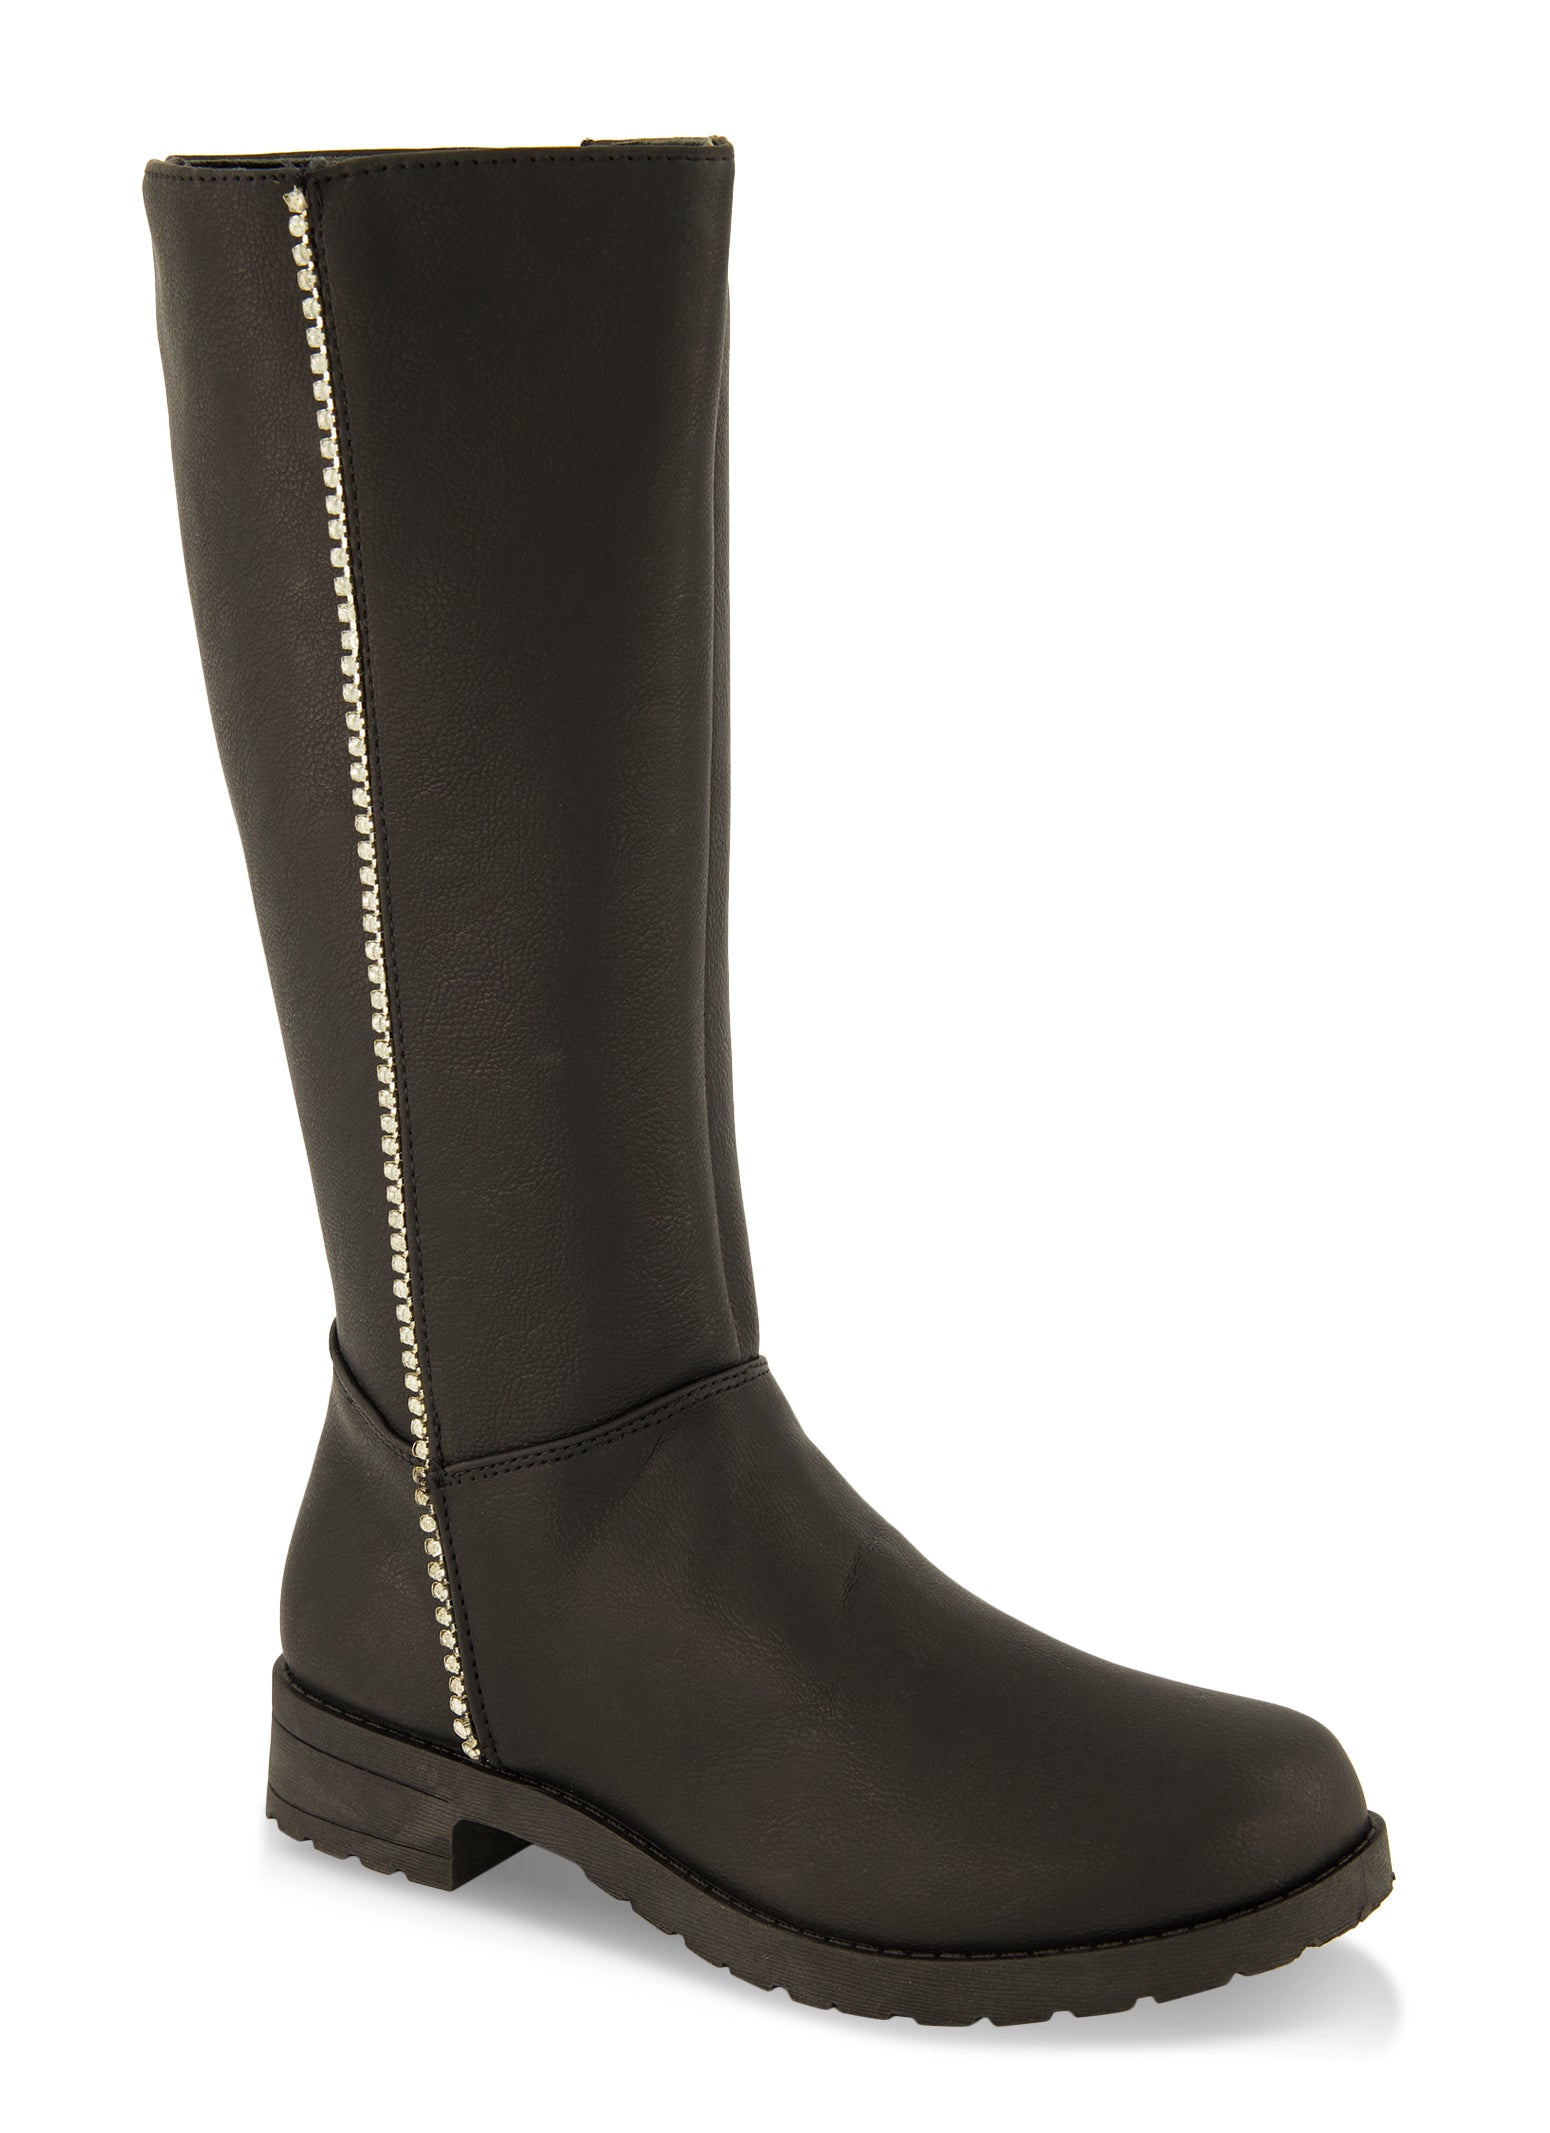 Womens Girls Rhinestone Trim Tall Boots, Black, Size 3